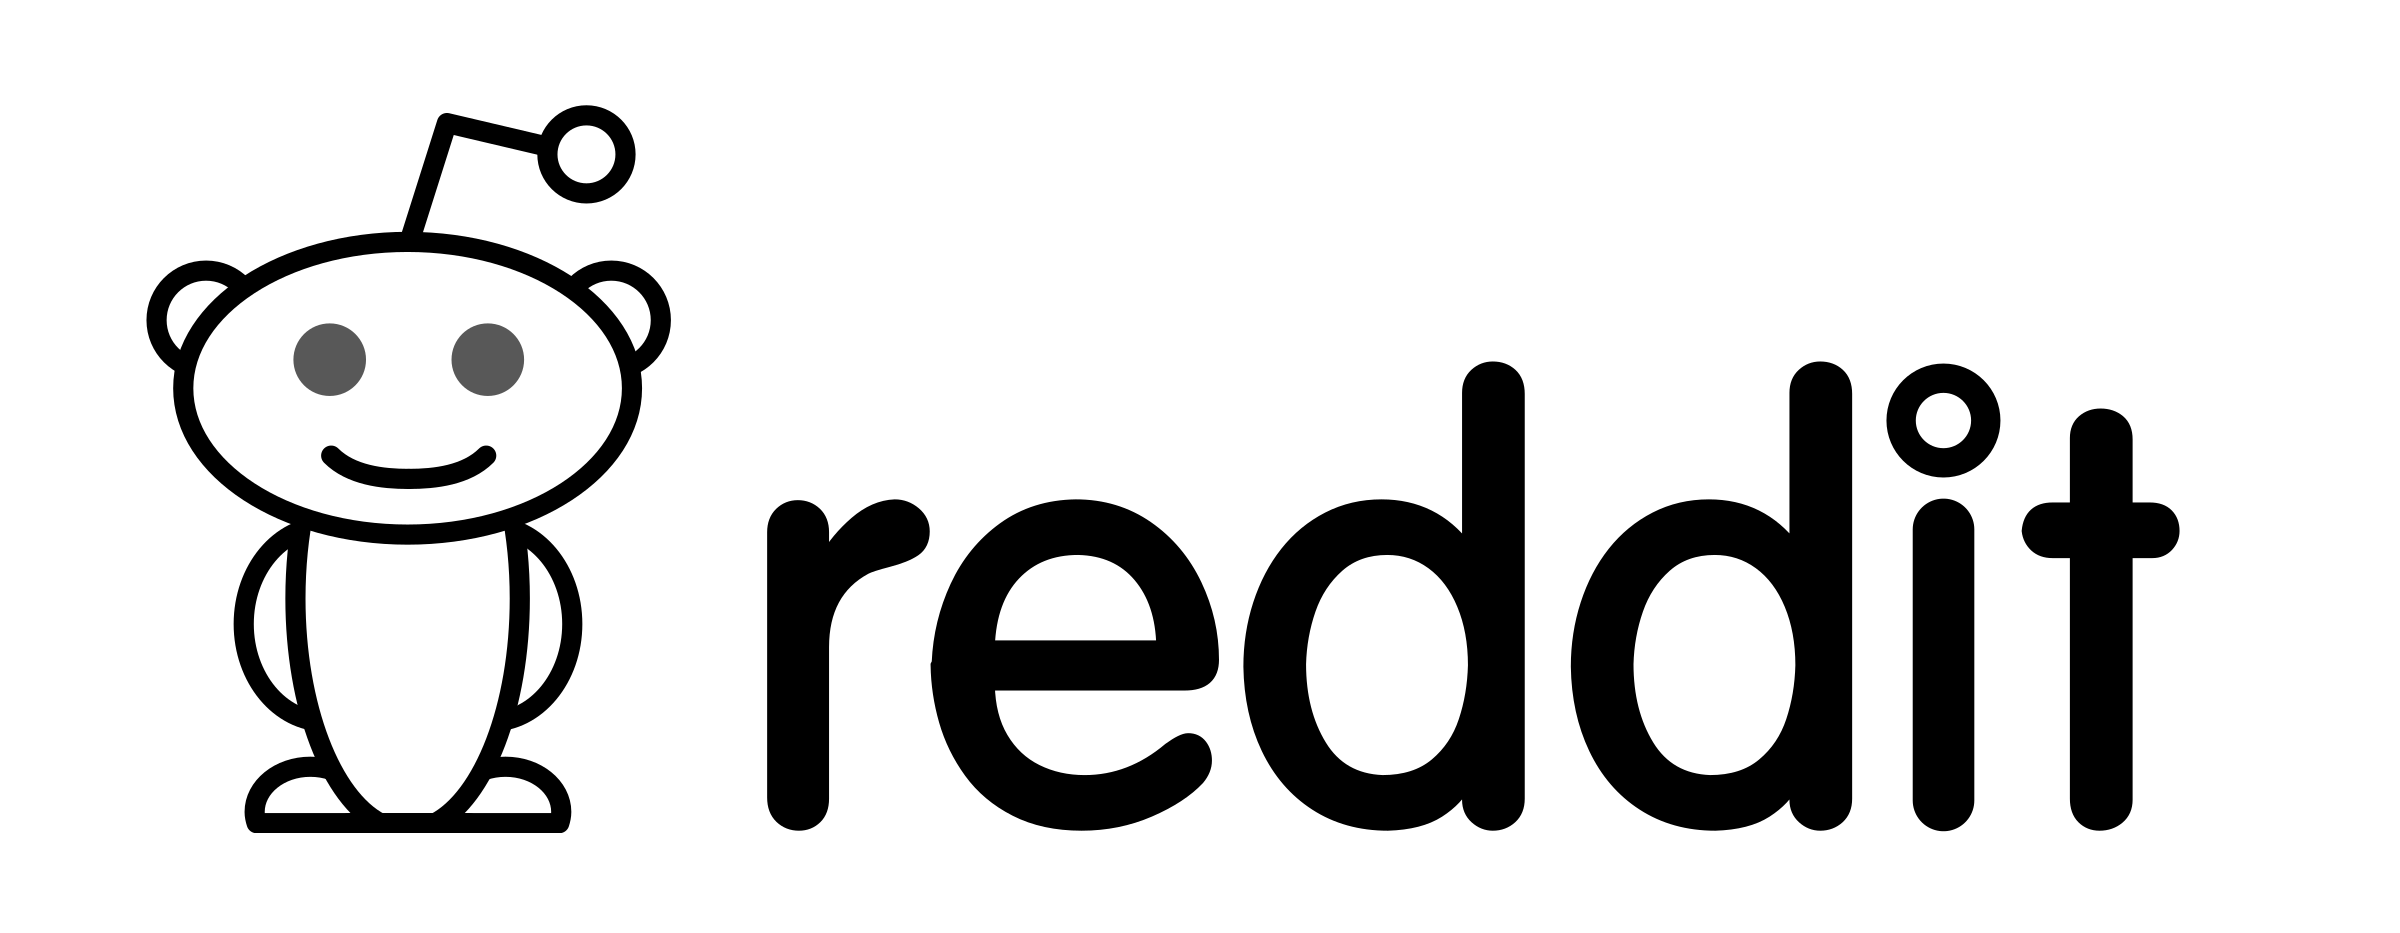 Reddit Face Logo Transparent 